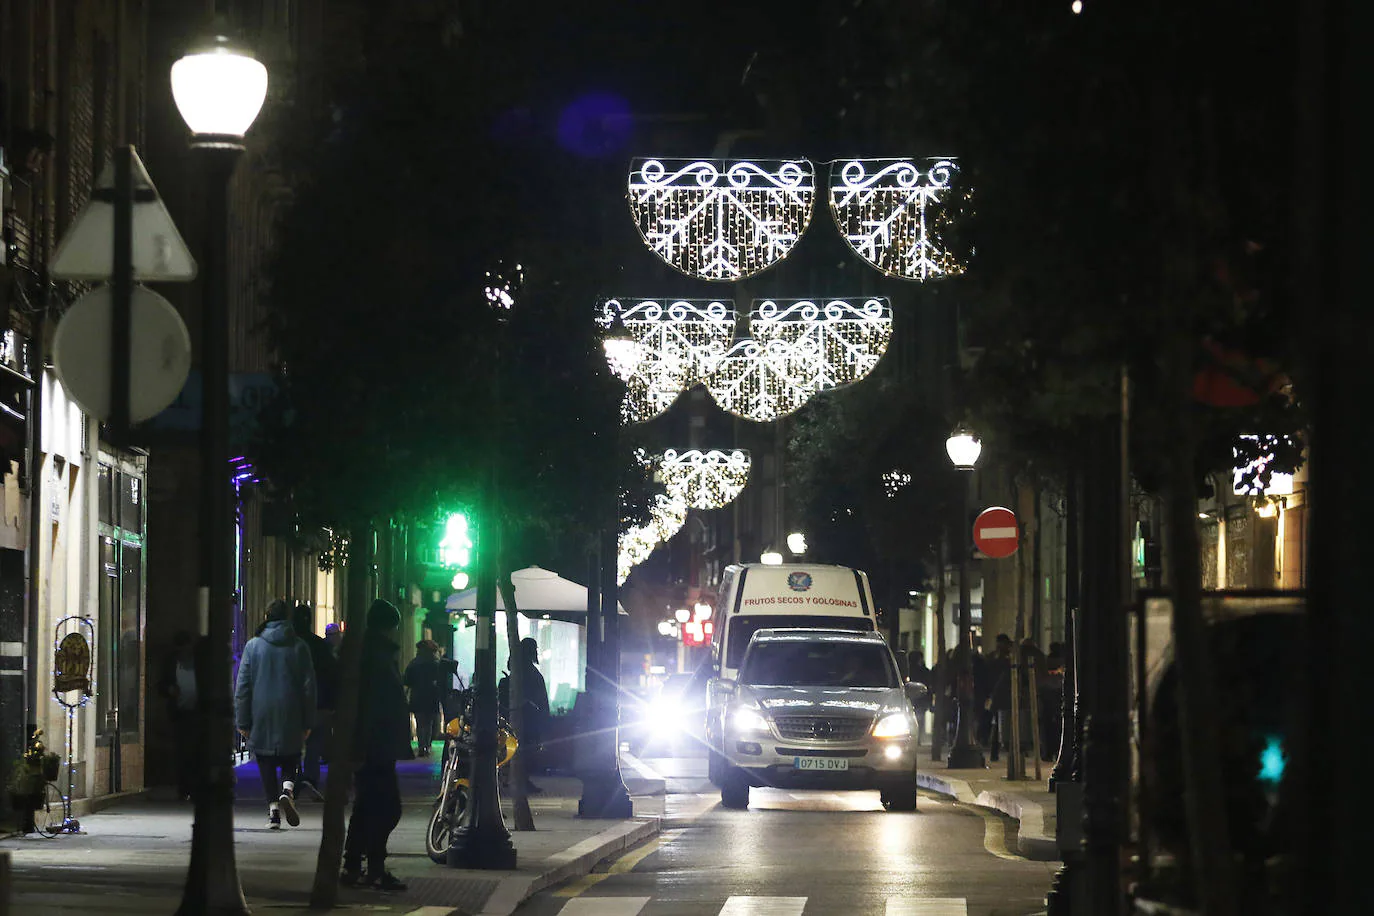 170 calles de la ciudad, cuarenta más que el año pasado, dan color a las fiestas navideñas.